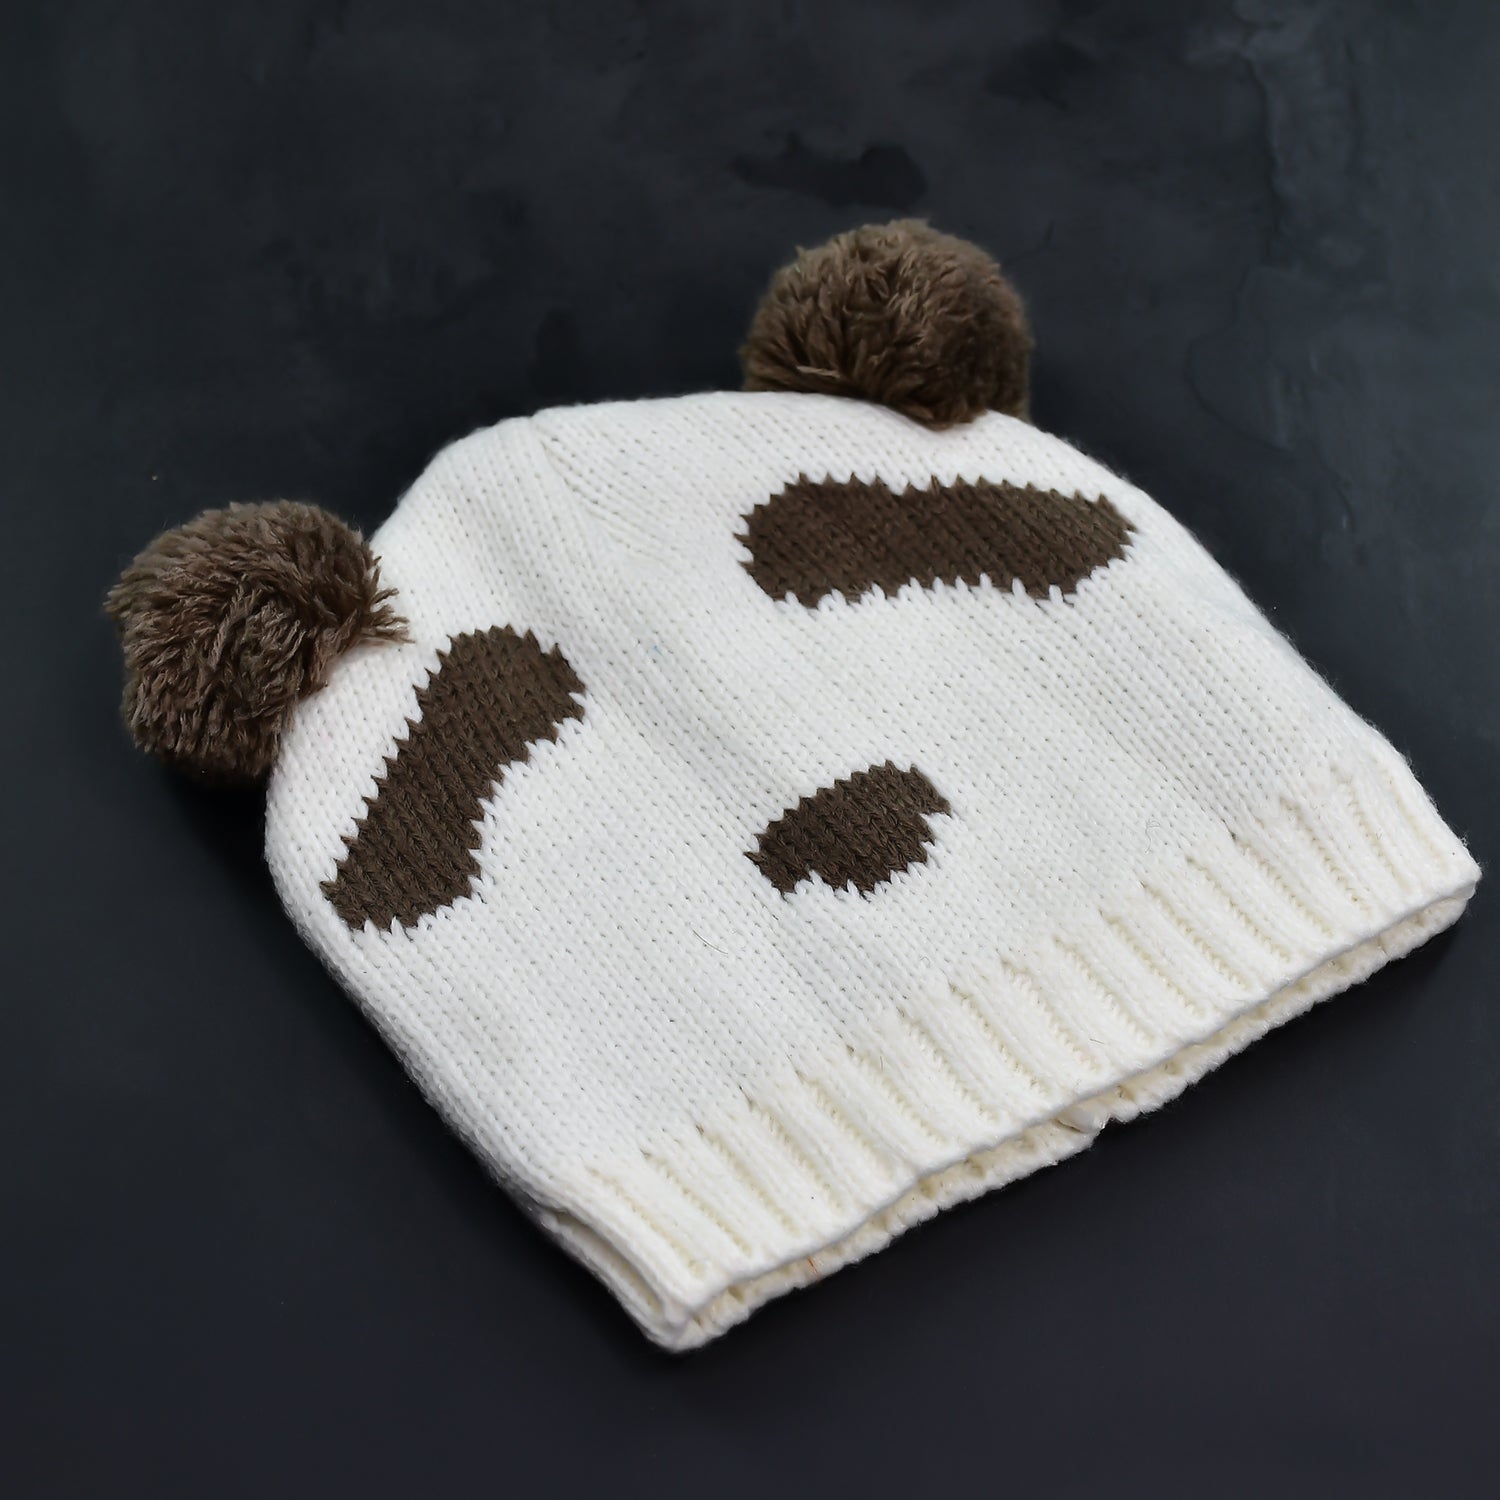 6349 Kids Winter Warm Soft Woolen Cap for Baby Boys and Girls DeoDap